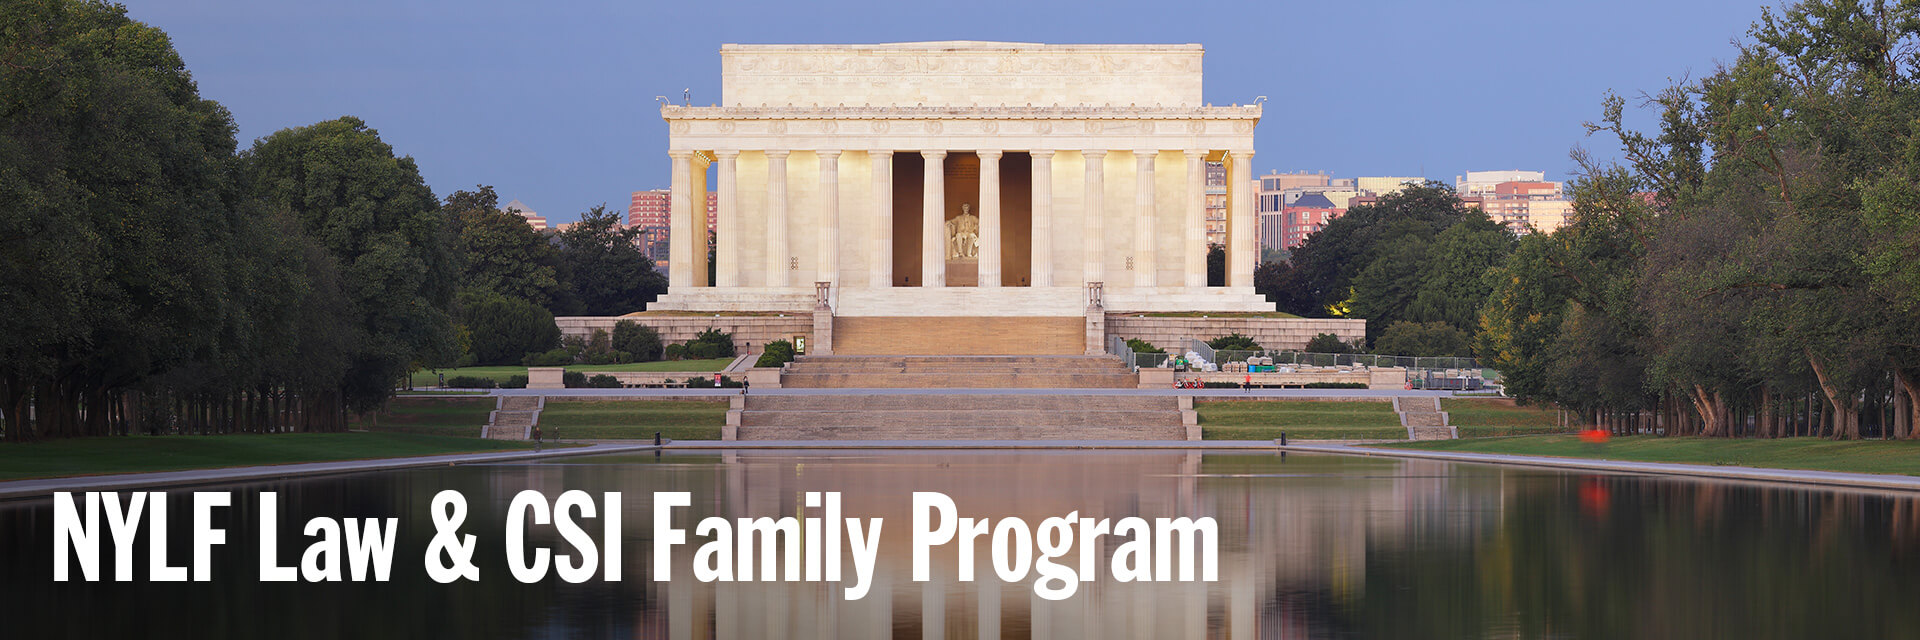 JrNYLC Family Program